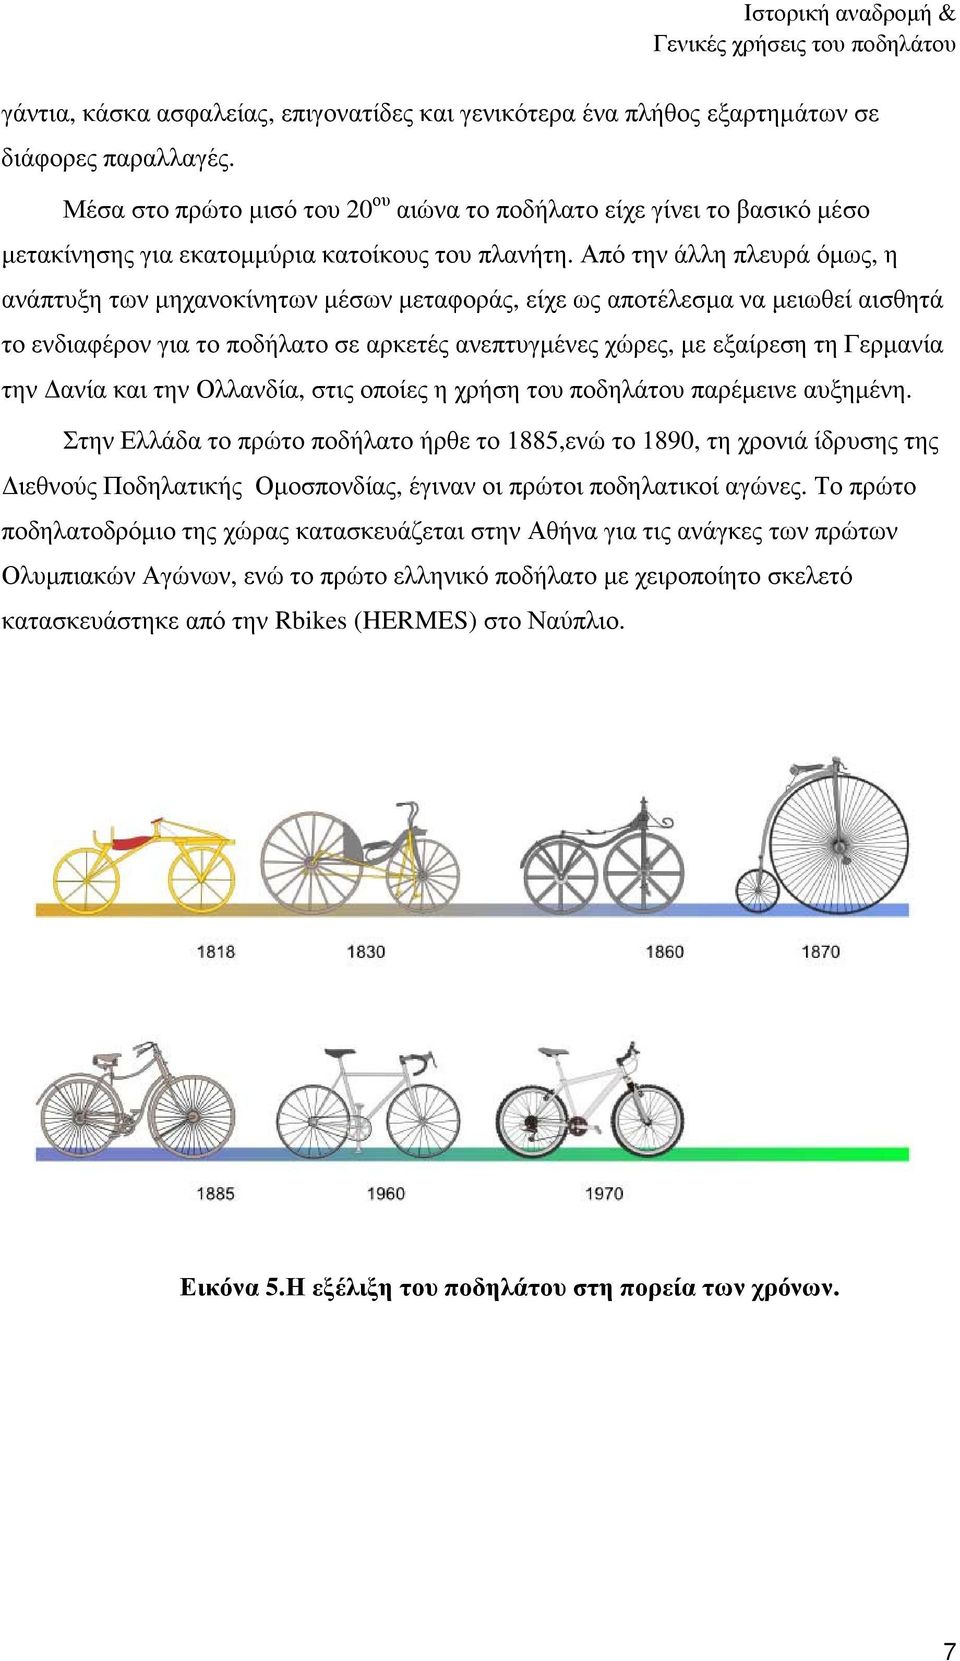 Από την άλλη πλευρά όµως, η ανάπτυξη των µηχανοκίνητων µέσων µεταφοράς, είχε ως αποτέλεσµα να µειωθεί αισθητά το ενδιαφέρον για το ποδήλατο σε αρκετές ανεπτυγµένες χώρες, µε εξαίρεση τη Γερµανία την